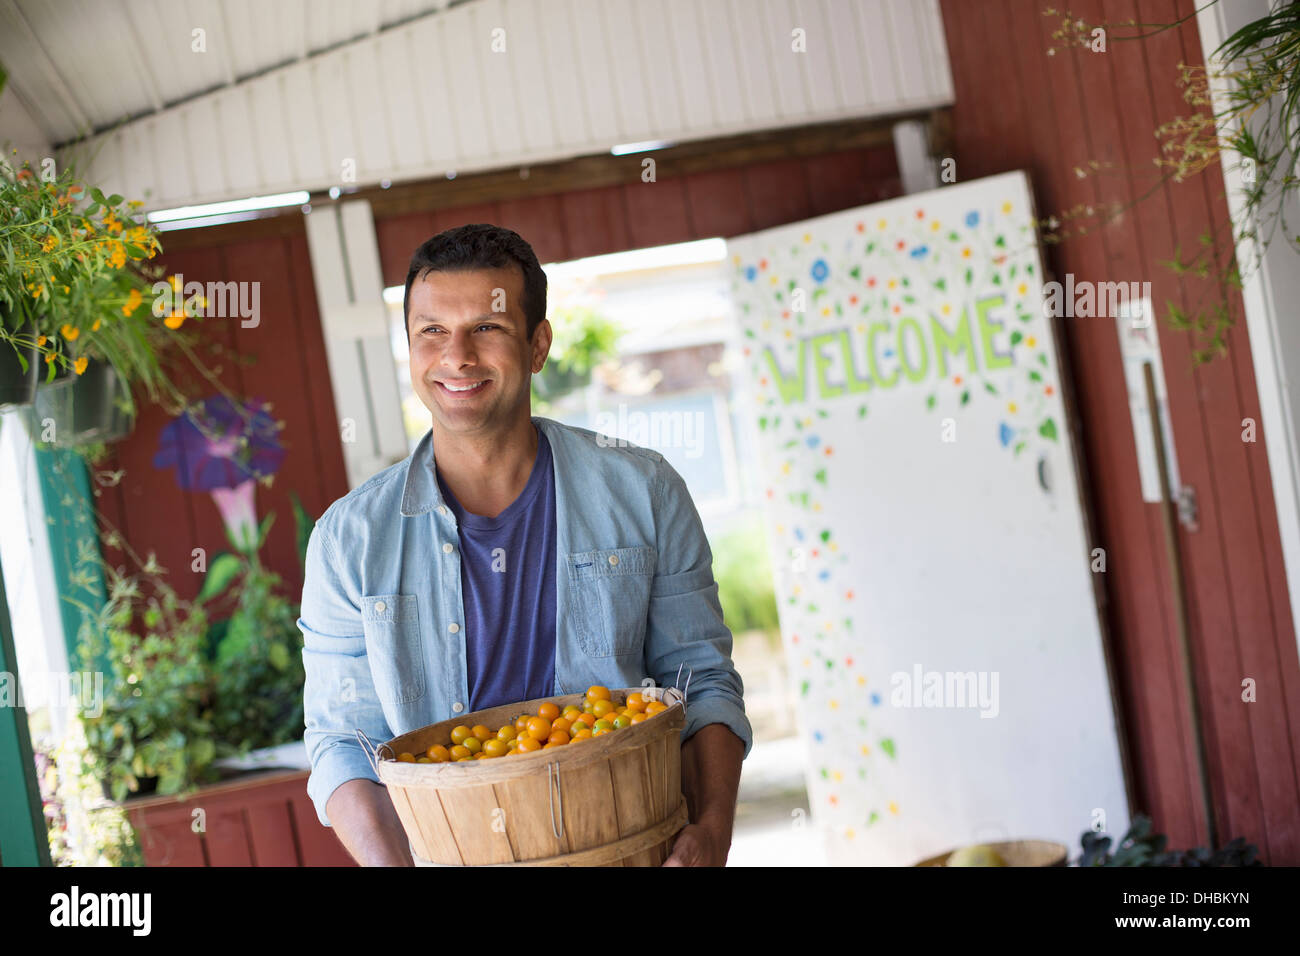 Ein Bauernhof, Anbau und Verkauf von Bio-Gemüse und Obst. Ein Mann hält eine Schale mit Korb mit frisch gepflückten Tomaten. Stockfoto